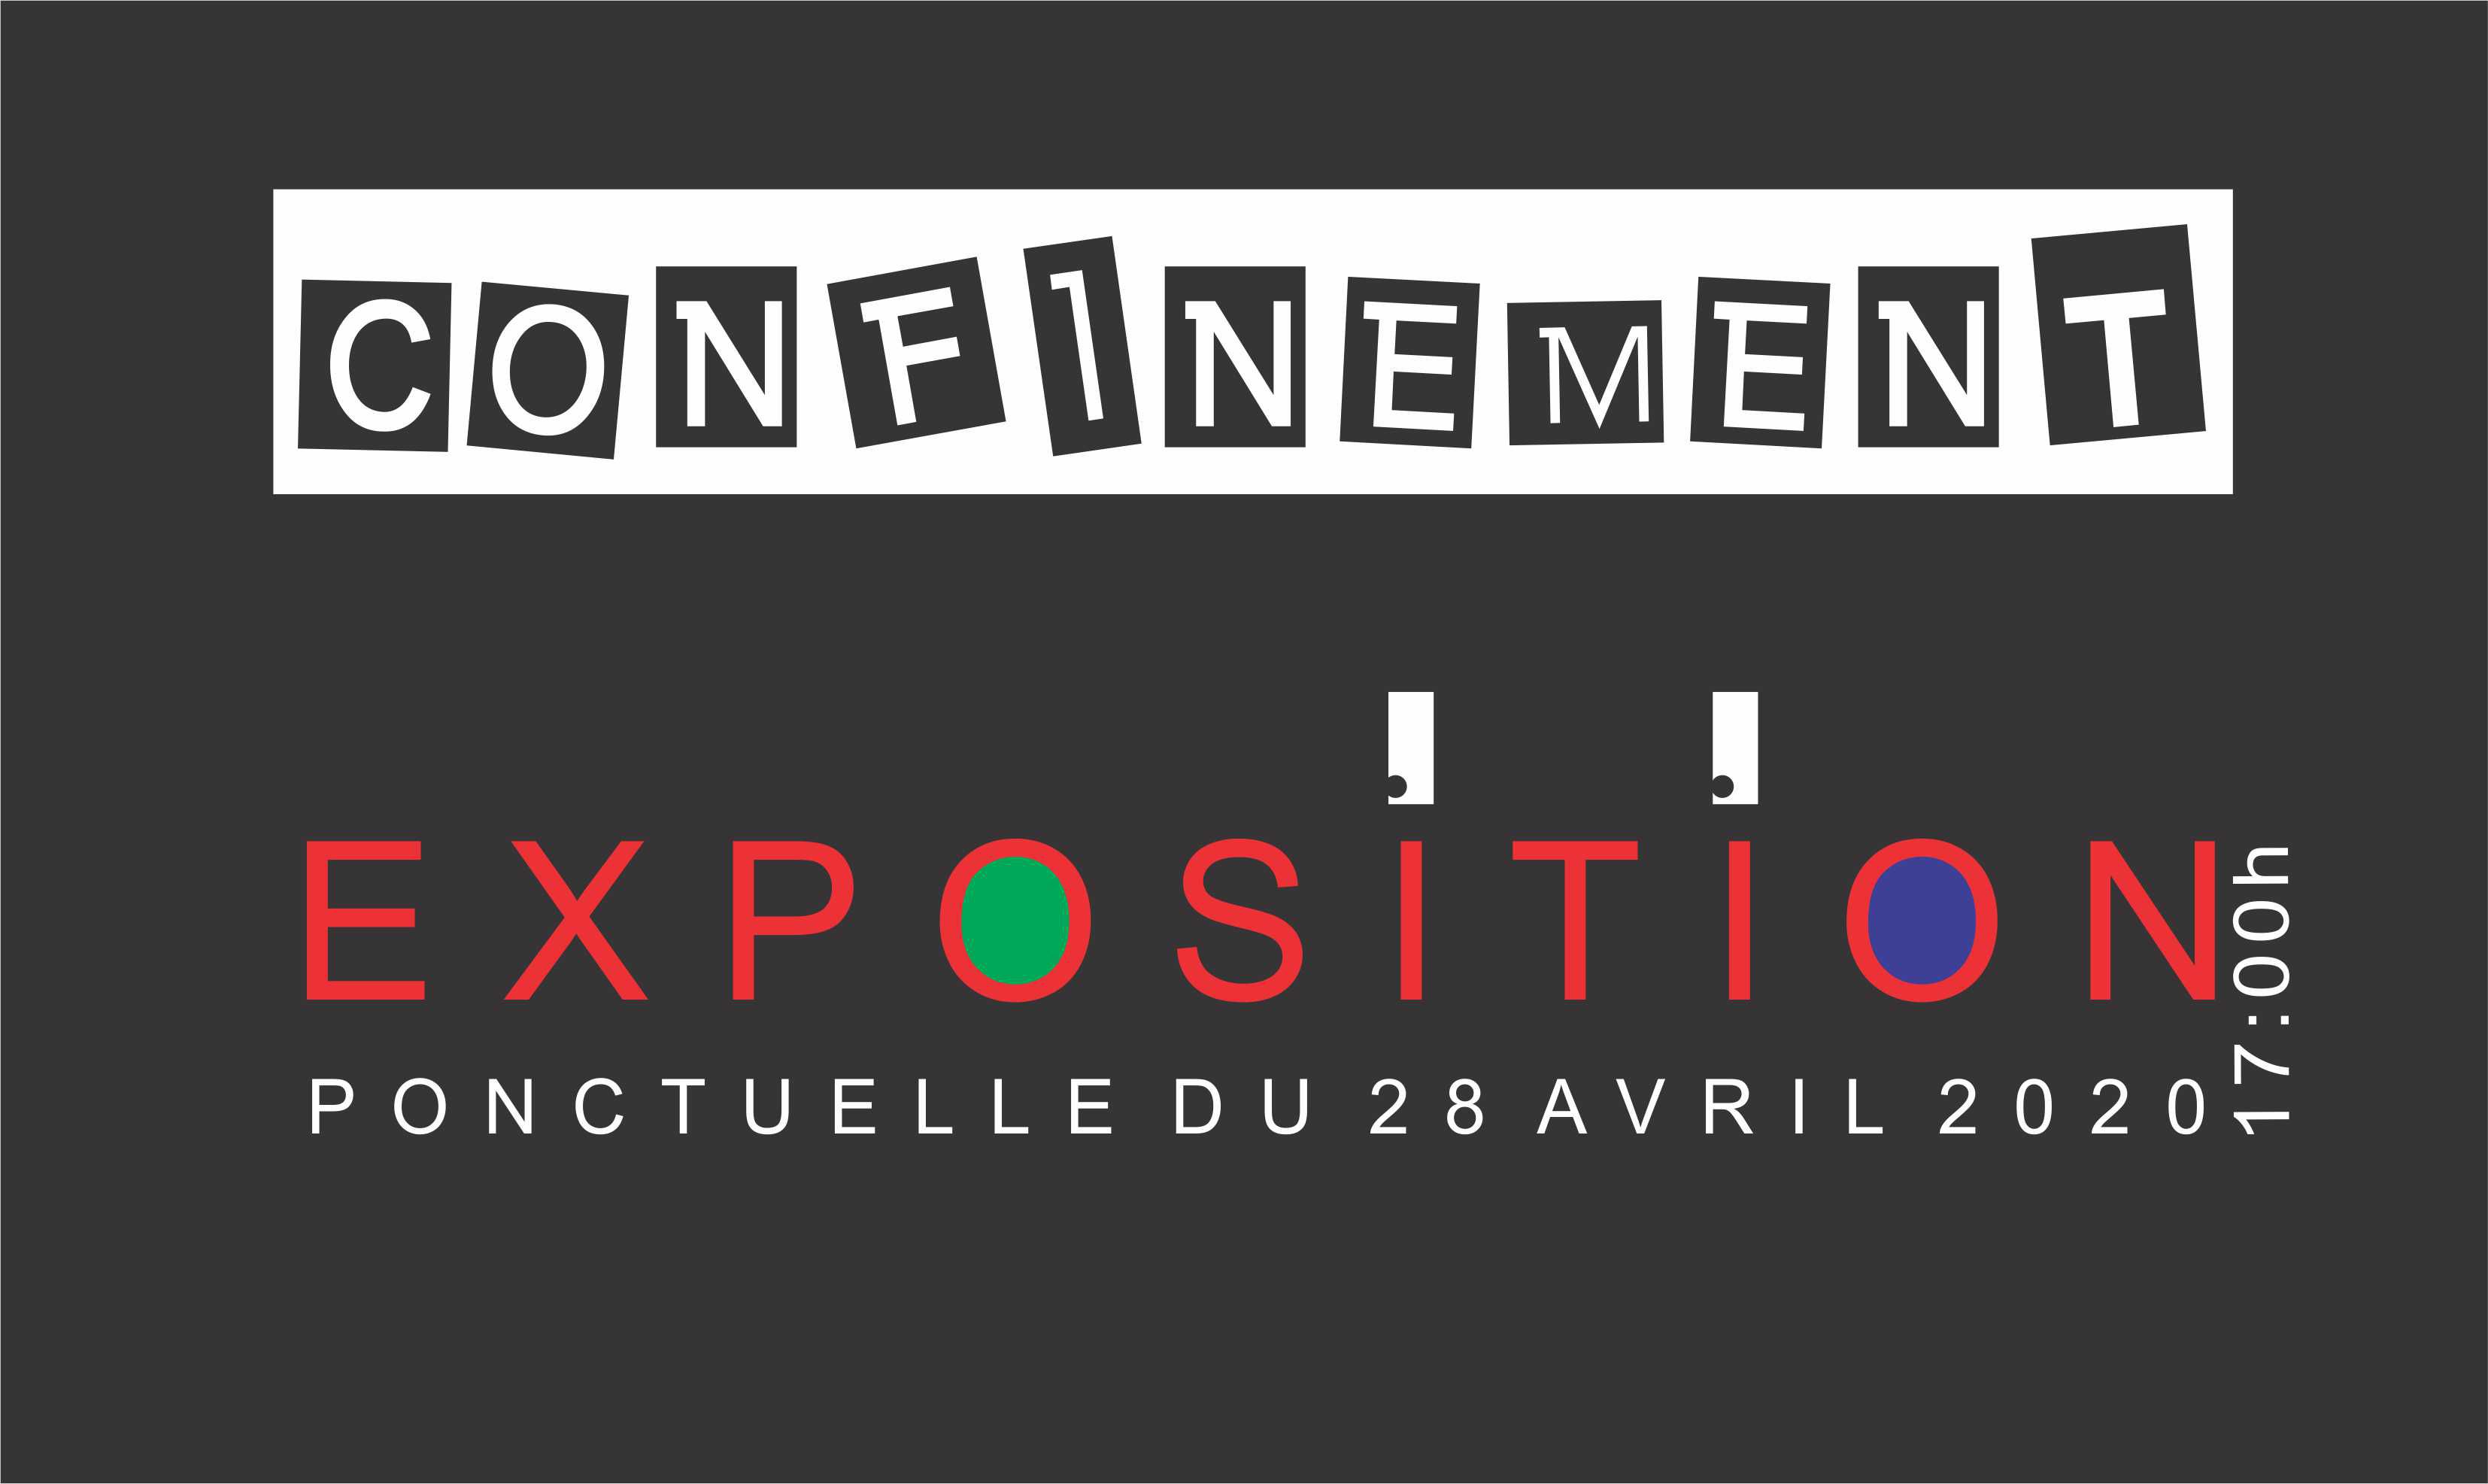 Exposition CONFINEMENT